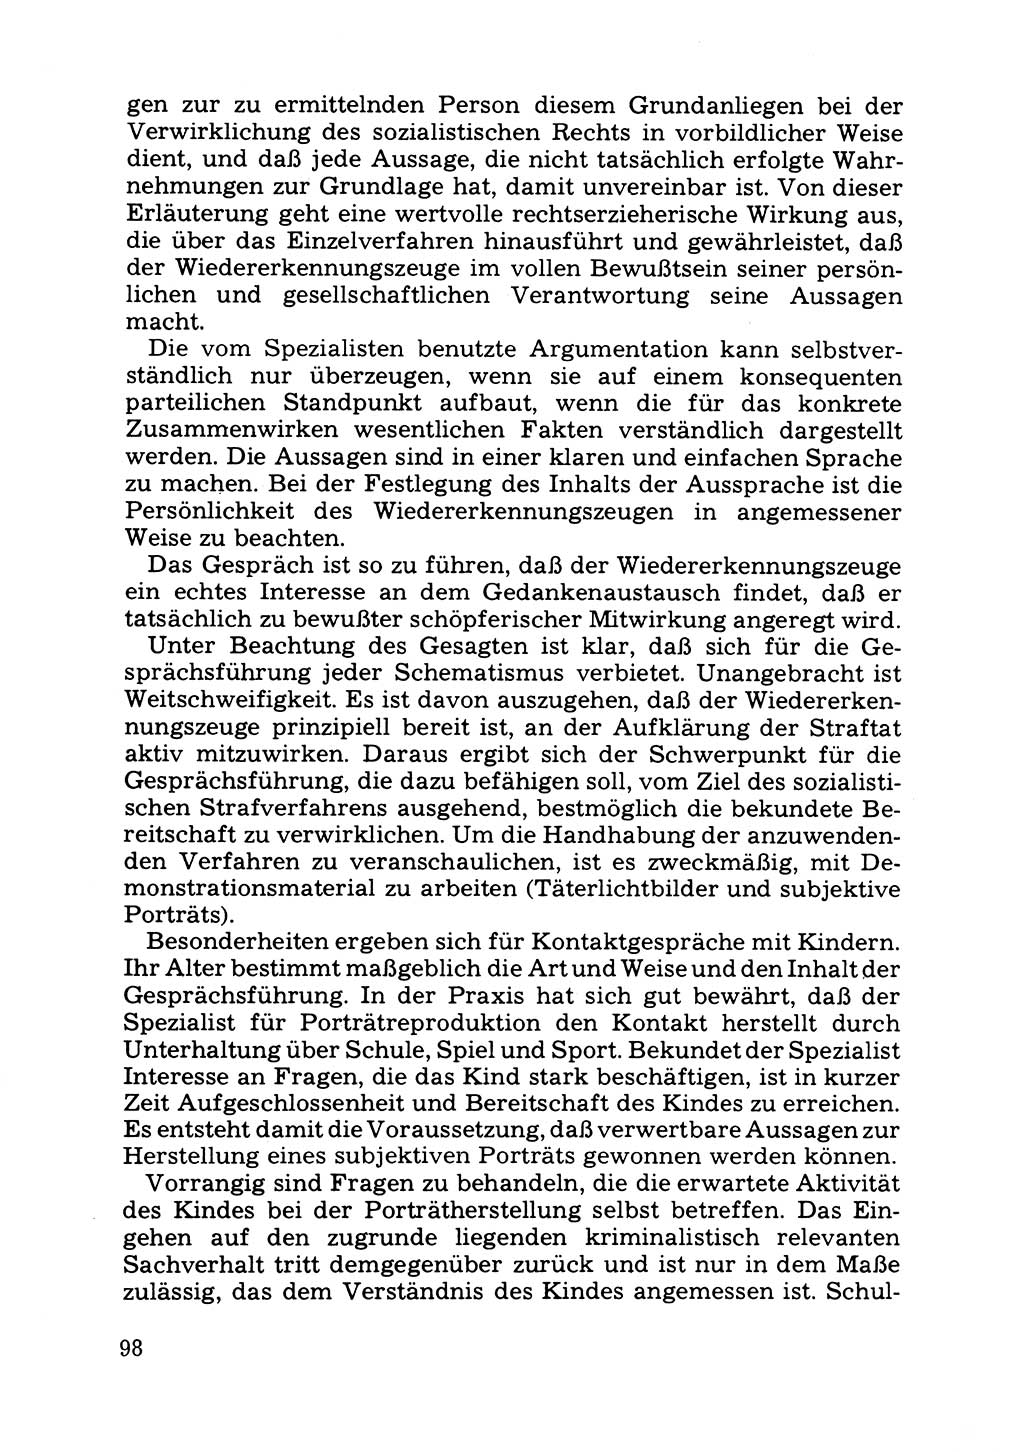 Das subjektive Porträt [Deutsche Demokratische Republik (DDR)] 1981, Seite 98 (Subj. Port. DDR 1981, S. 98)